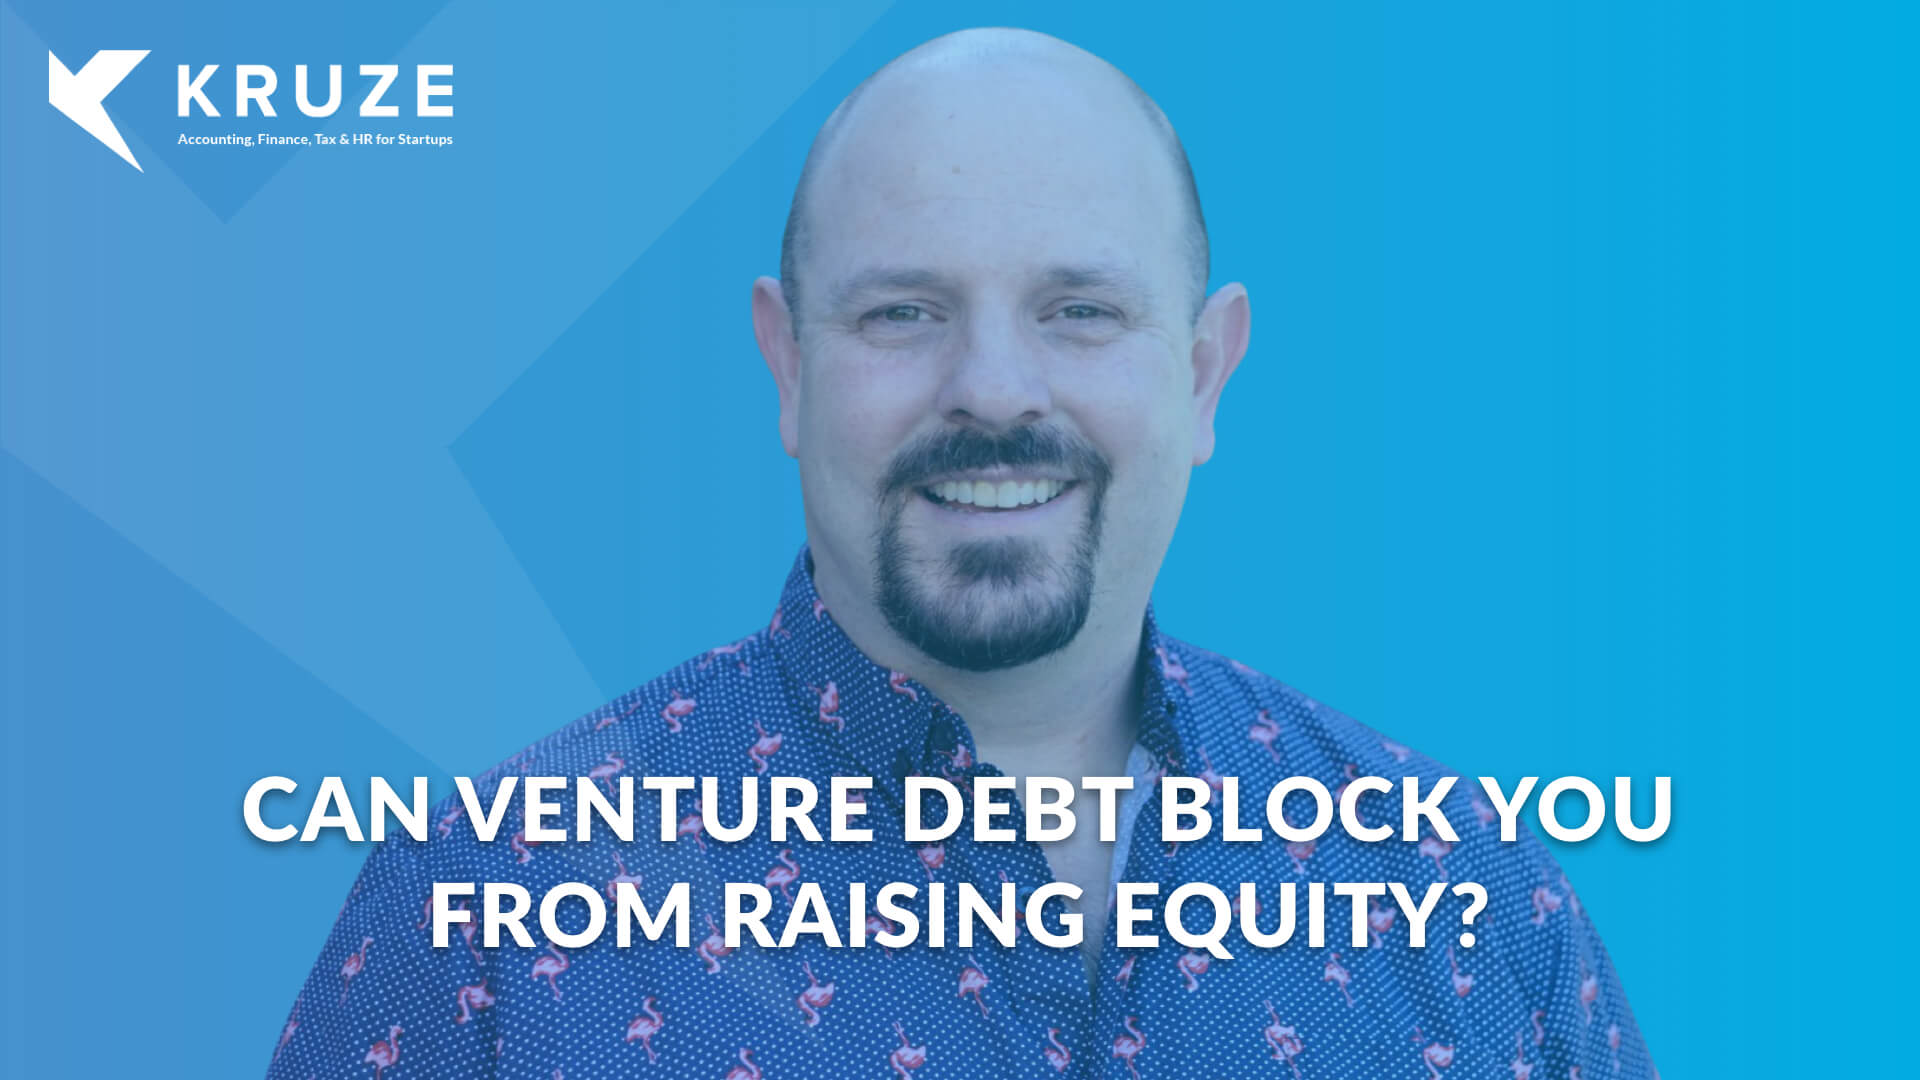 How do venture debt overhangs affect equity funding?